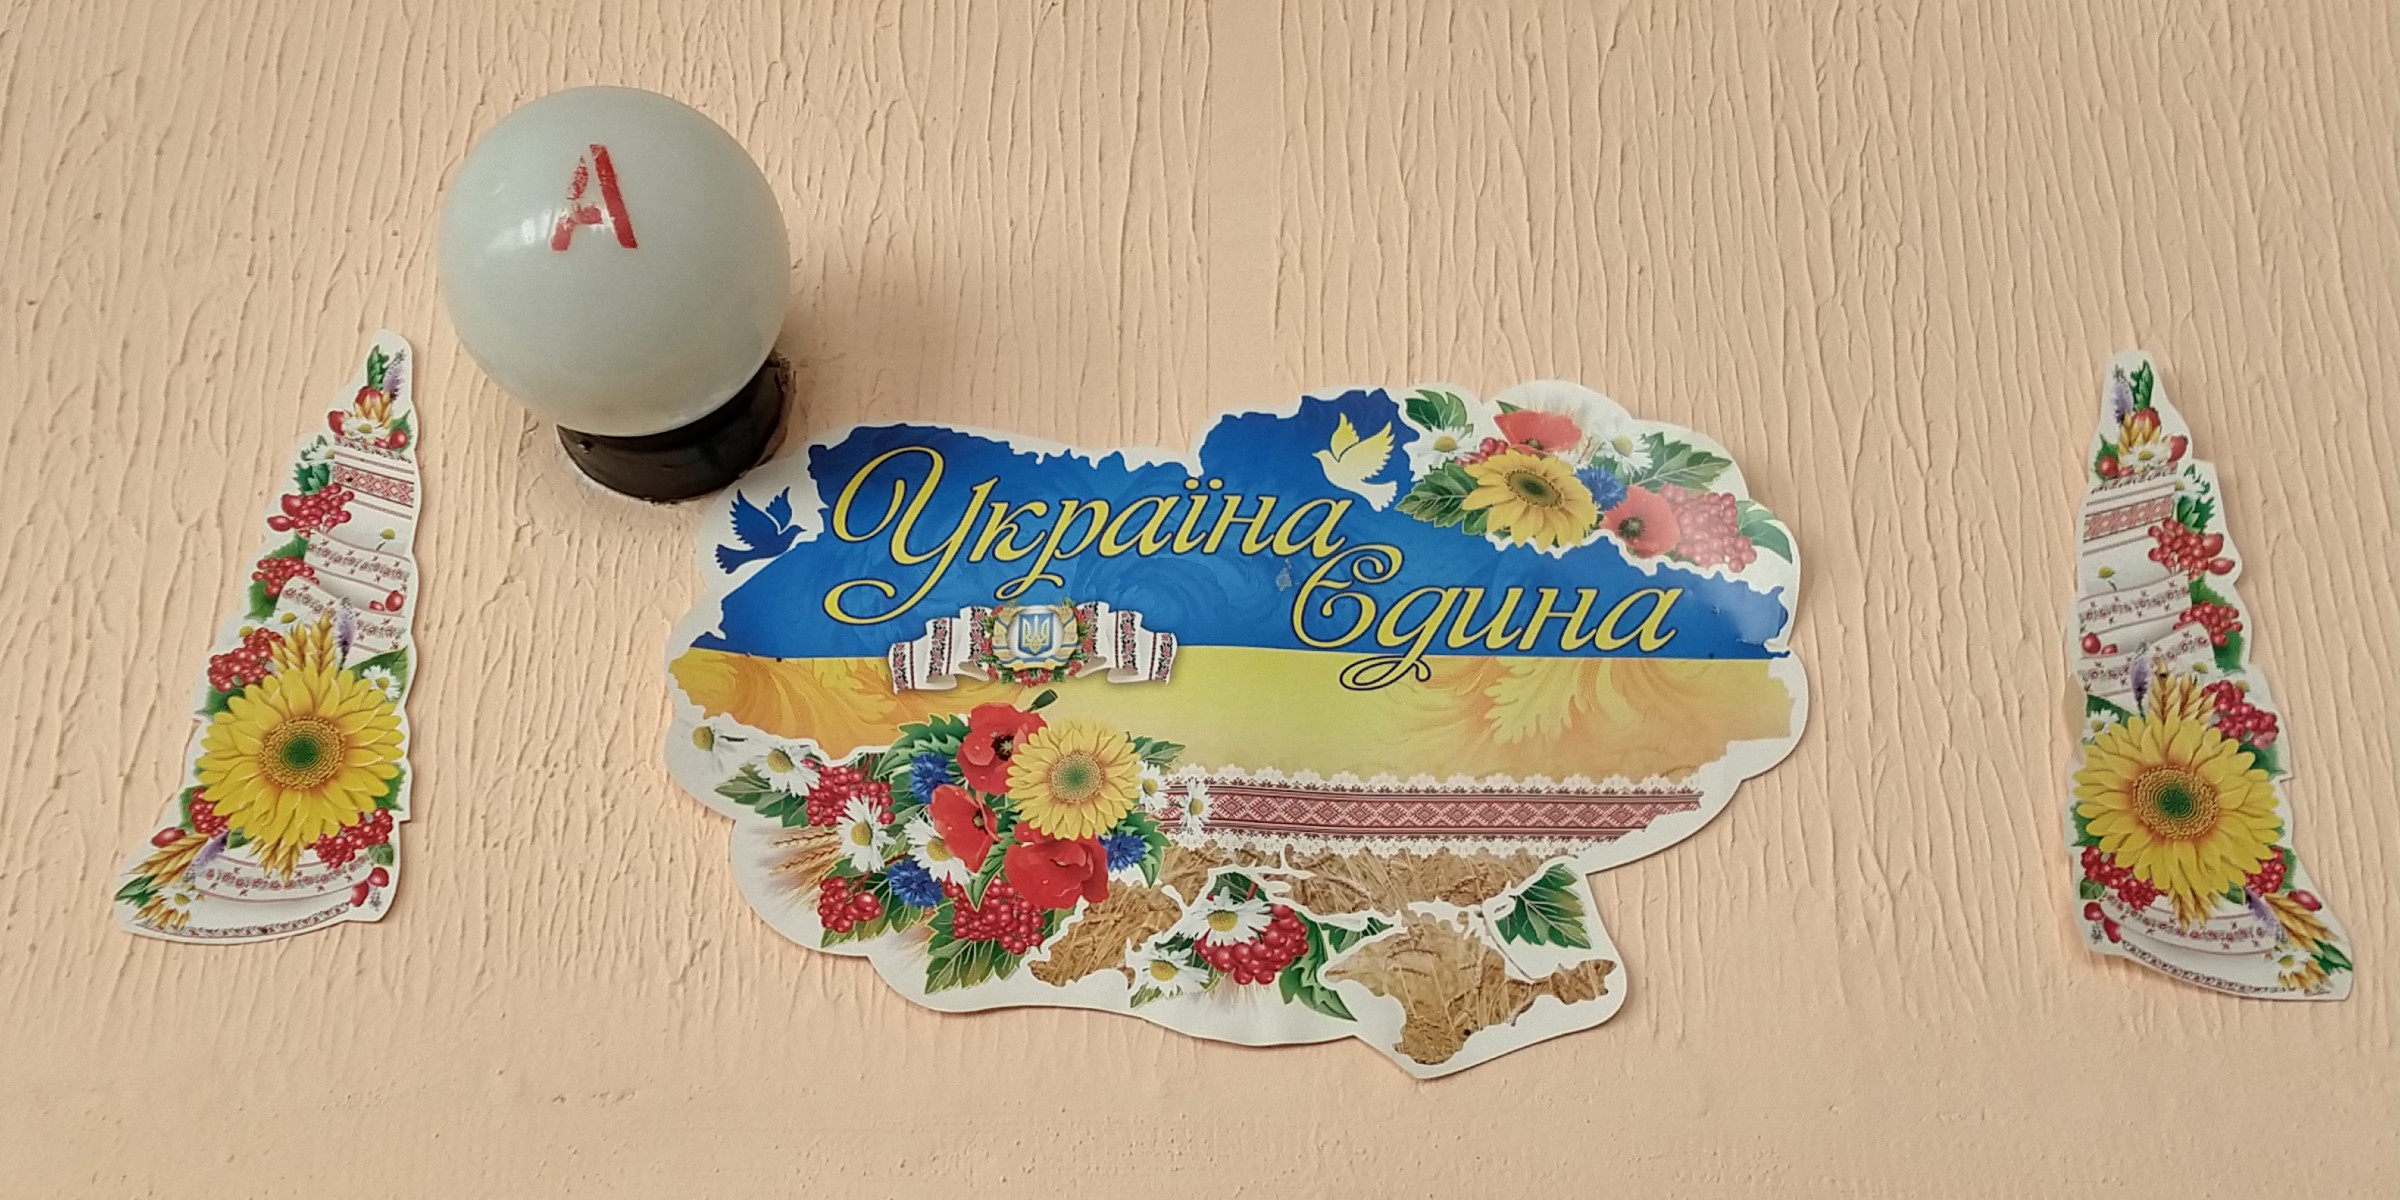 På en ferskenfarget murvegg henger en hvit lyskuppel med bokstaven A i rødt. Under kuppelen er det festet tre papirbilder, hvor en silhuett av det ukrainske kartet er midten, omgitt av dekorelementer bestående av solsikker og andre blomster.